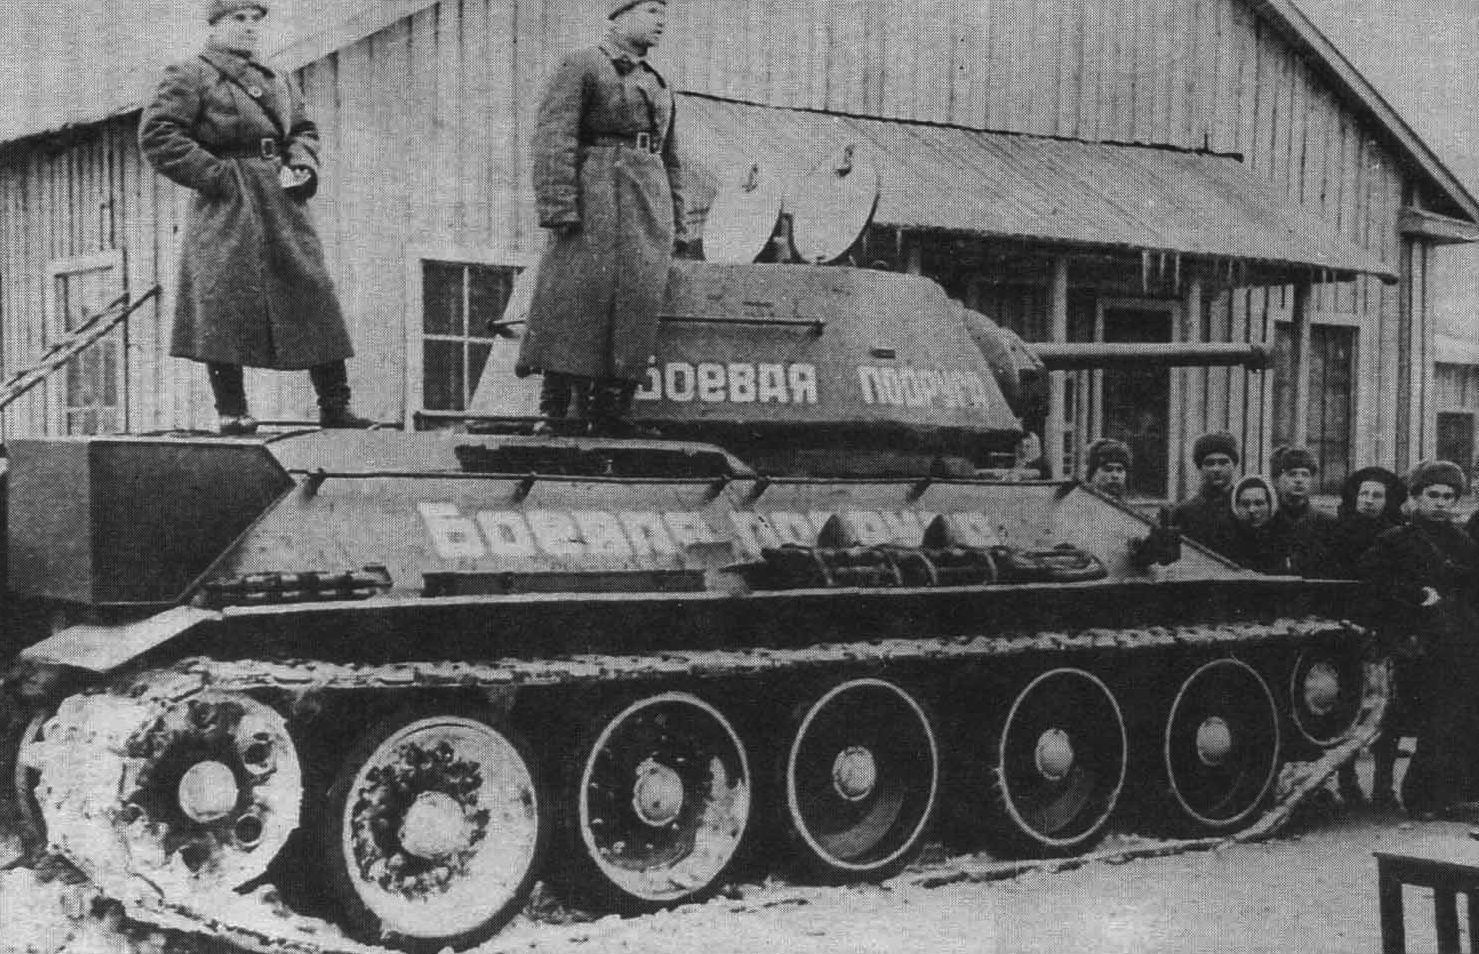 Женщина механик водитель танка герой советского союза. Танк Боевая подруга Марии Октябрьской. Т-34-76 Боевая подруга.